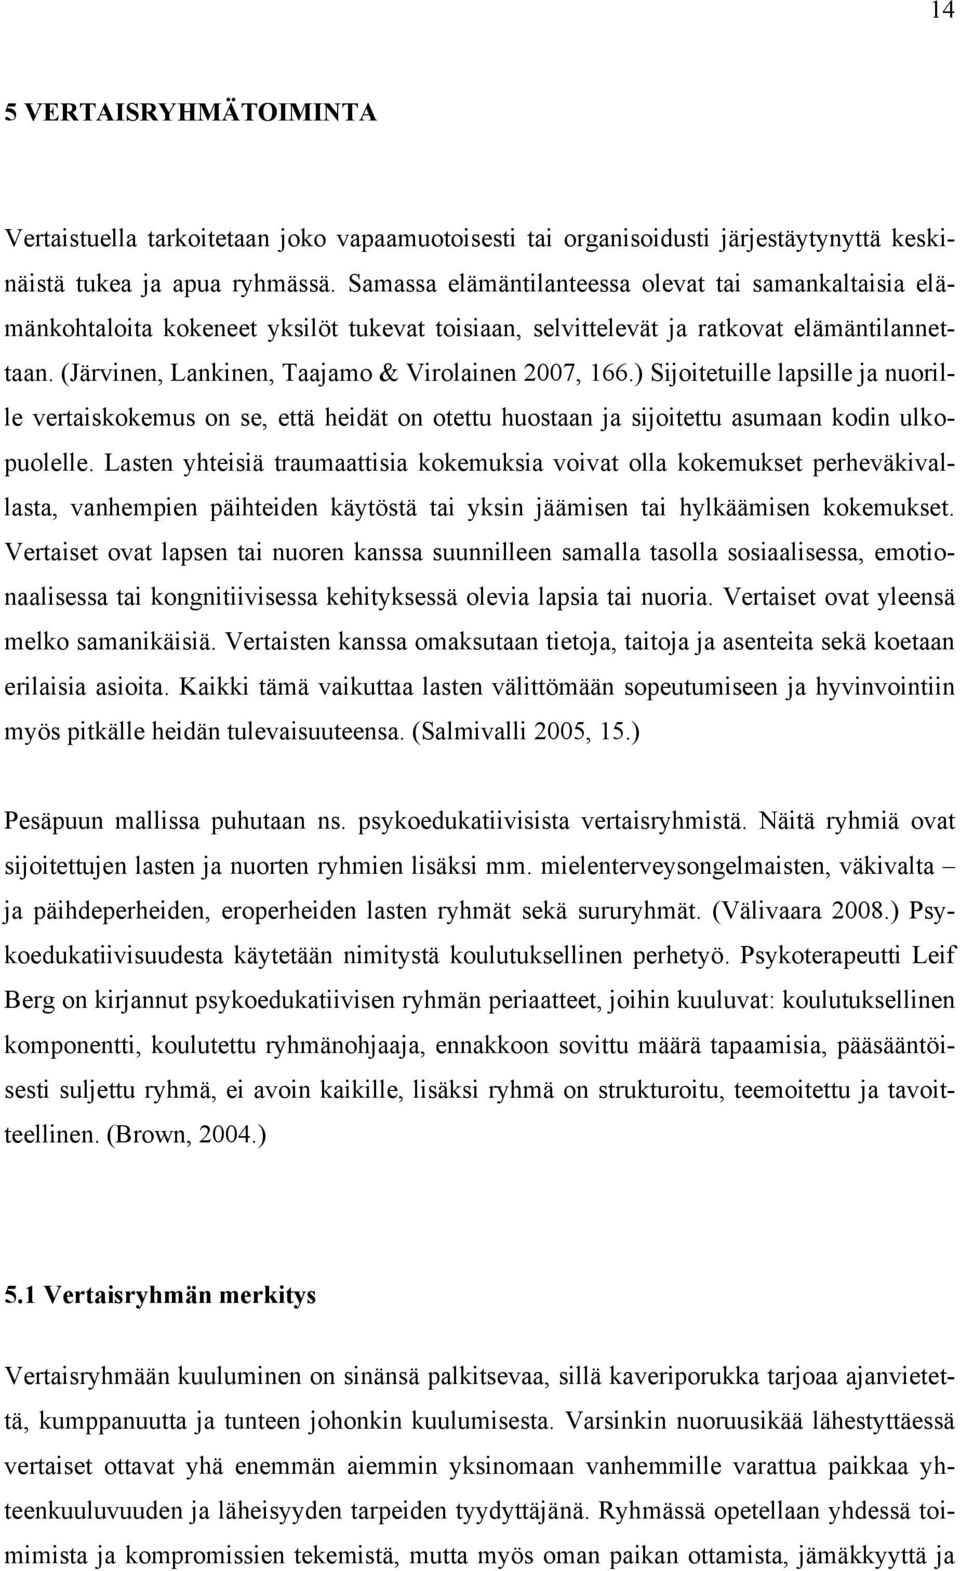 (Järvinen, Lankinen, Taajamo & Virolainen 2007, 166.) Sijoitetuille lapsille ja nuorille vertaiskokemus on se, että heidät on otettu huostaan ja sijoitettu asumaan kodin ulkopuolelle.